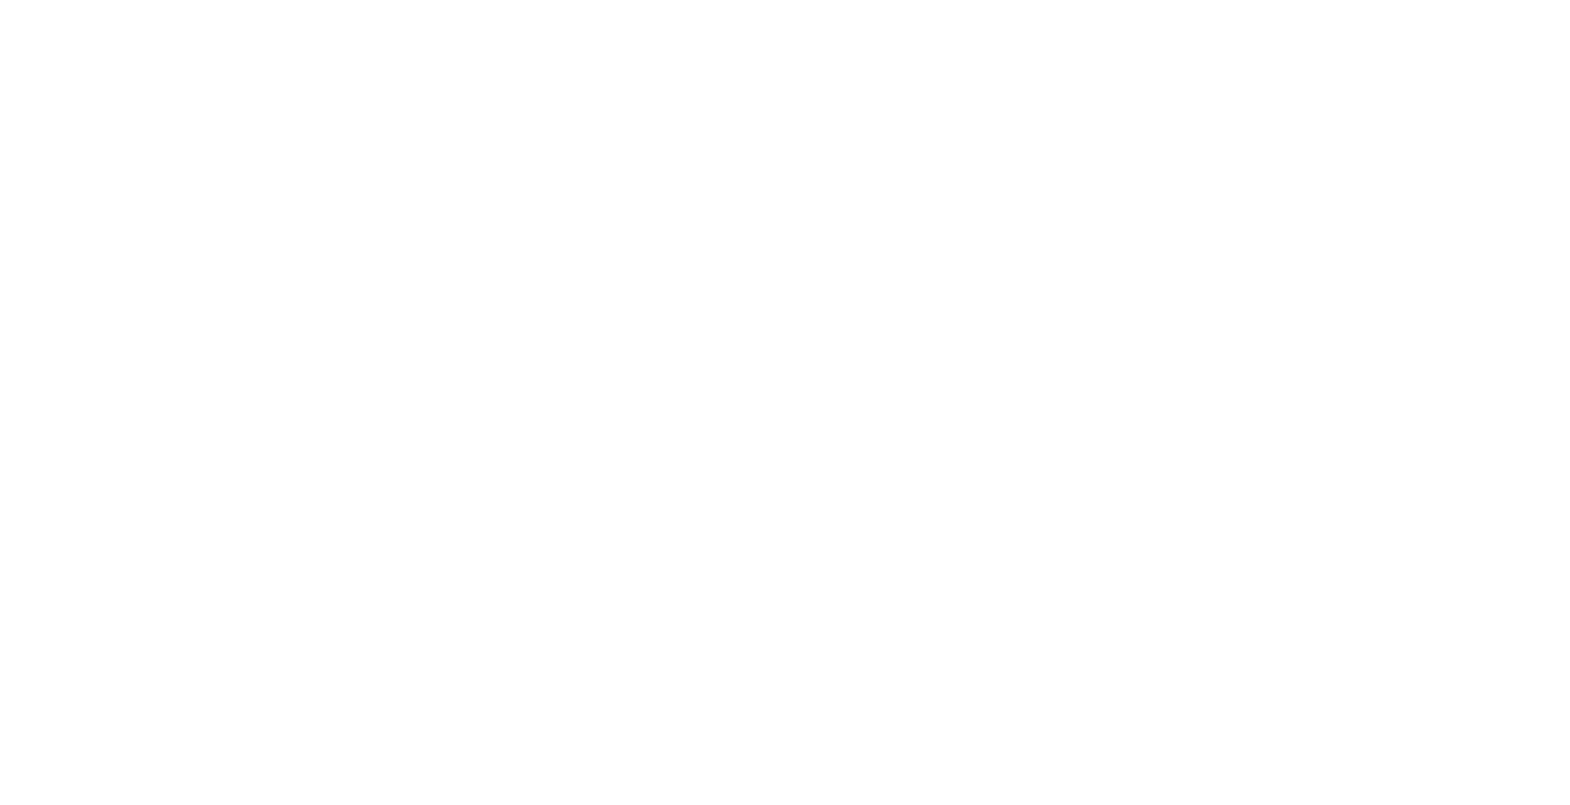 Kadant logo pour fonds sombres (PNG transparent)